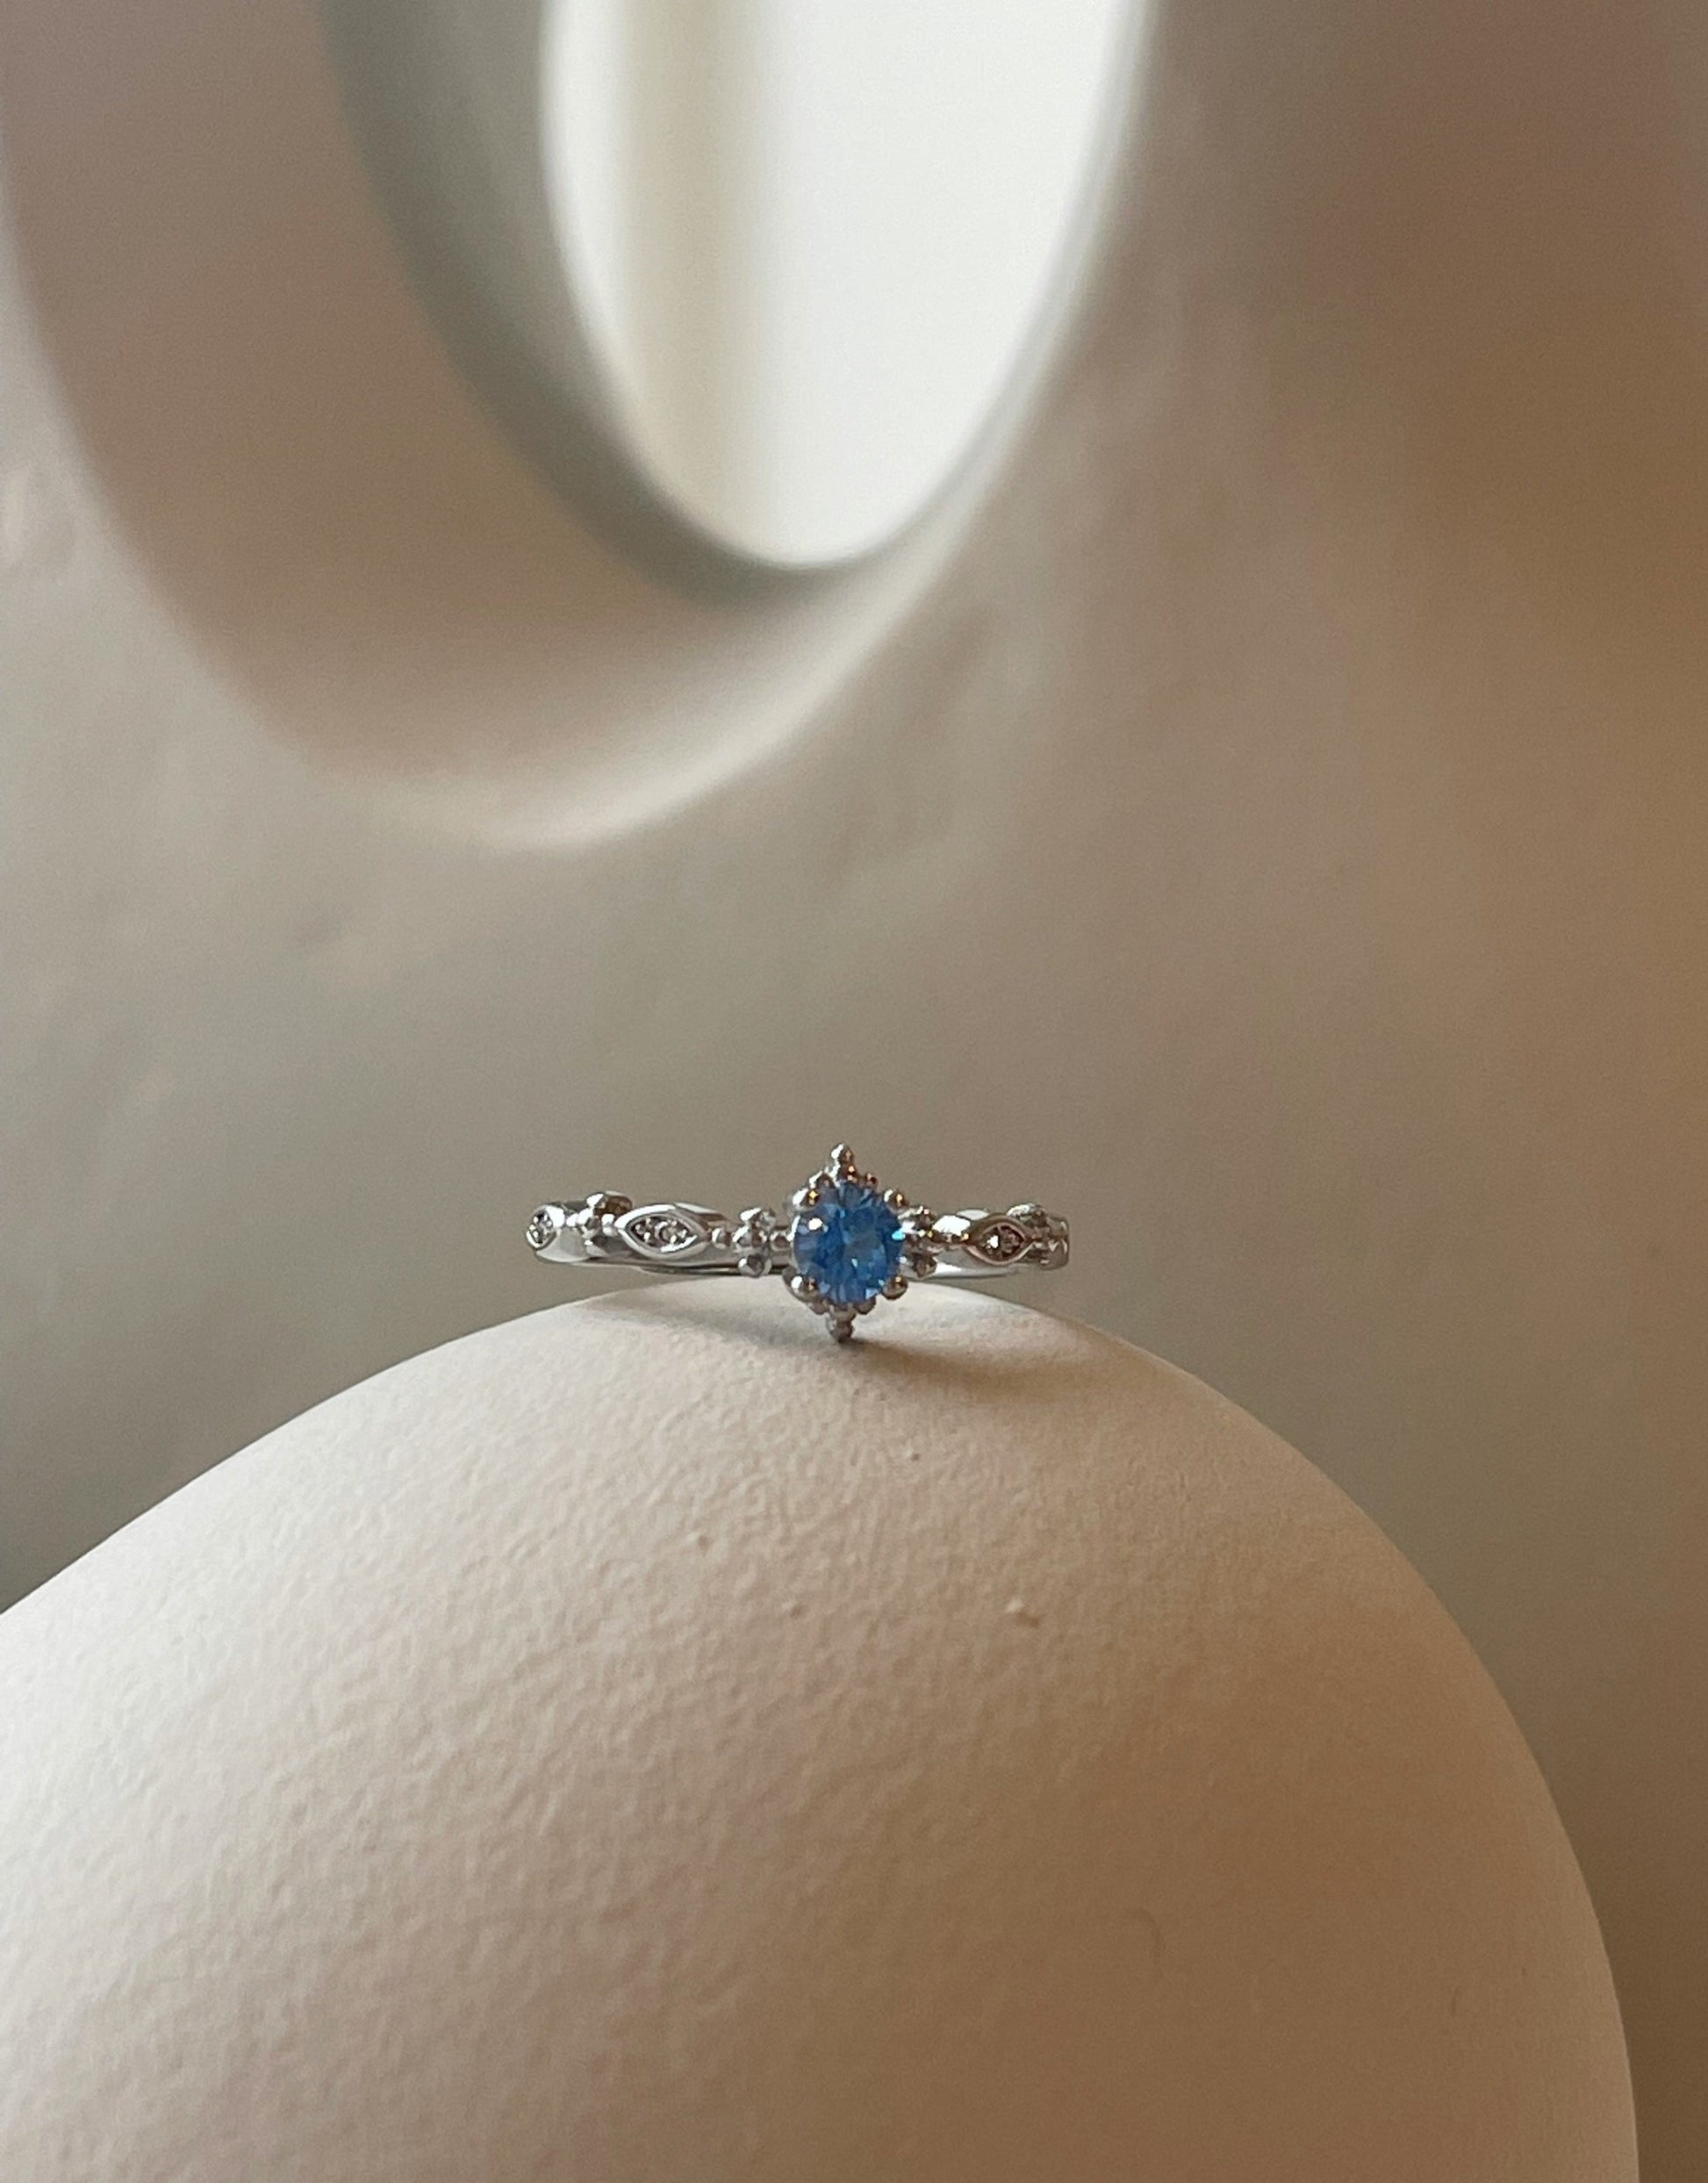 Malua ring i S925 sterling sølv.  Unik ring i elegant design med flot lyseblå zircon sten.  Materiale: S925 sterling sølv, zircon sten Størrelse: Justerbar